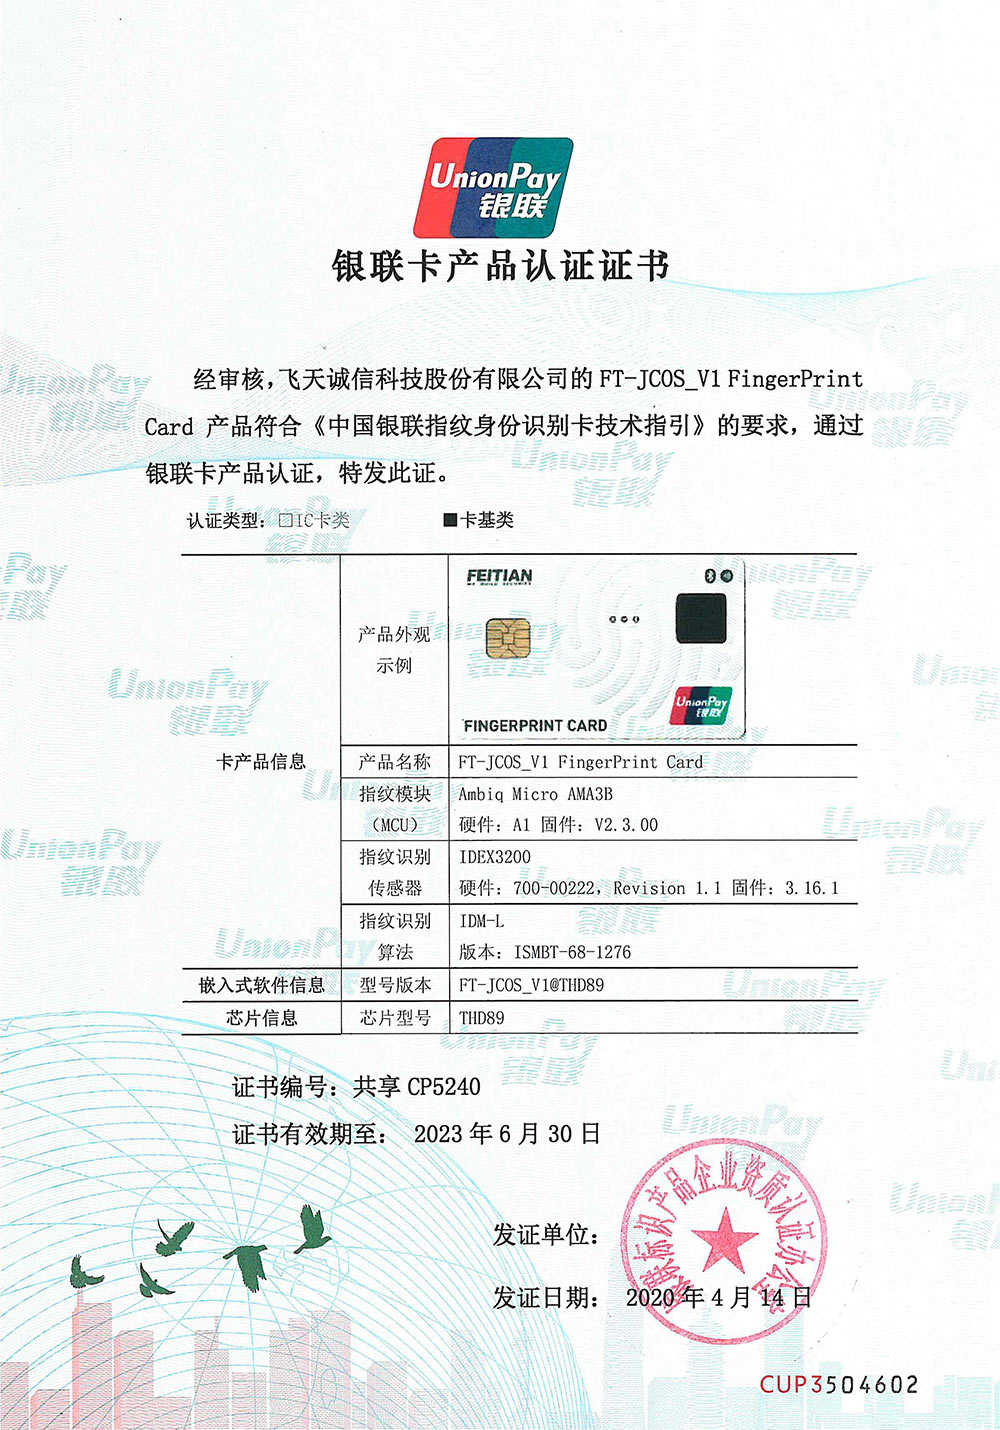 Fingerprint Payment Card UnionPay Product Certification